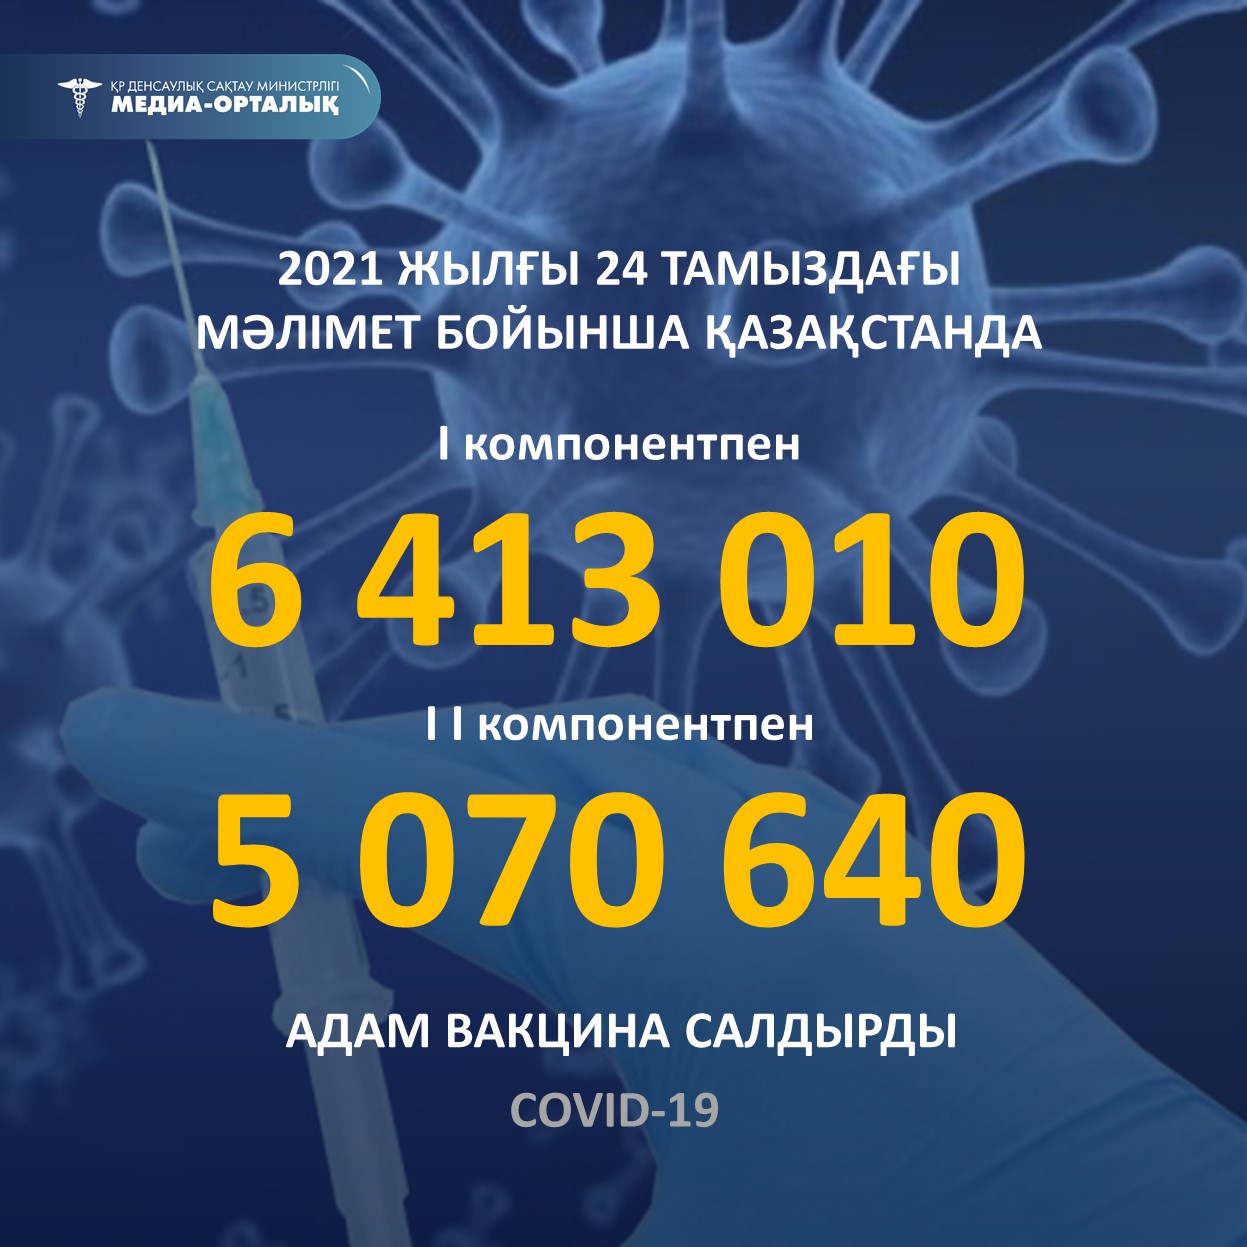 2021 жылғы 24 тамыздағы мәлімет бойынша Қазақстанда I компонентпен 6 413 010 адам вакцина салдырды, II компонентпен 5 070 640 адам.